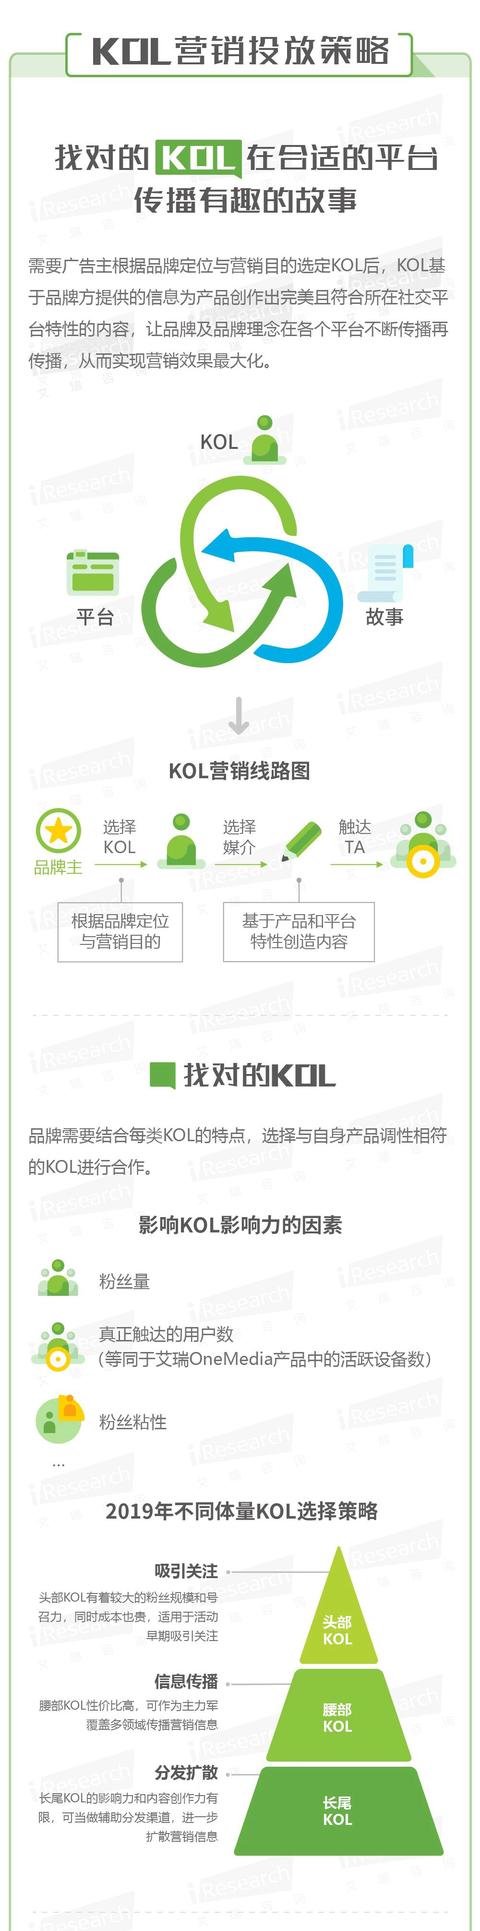 Z世代崛起——KOL营销策略洞察微报告